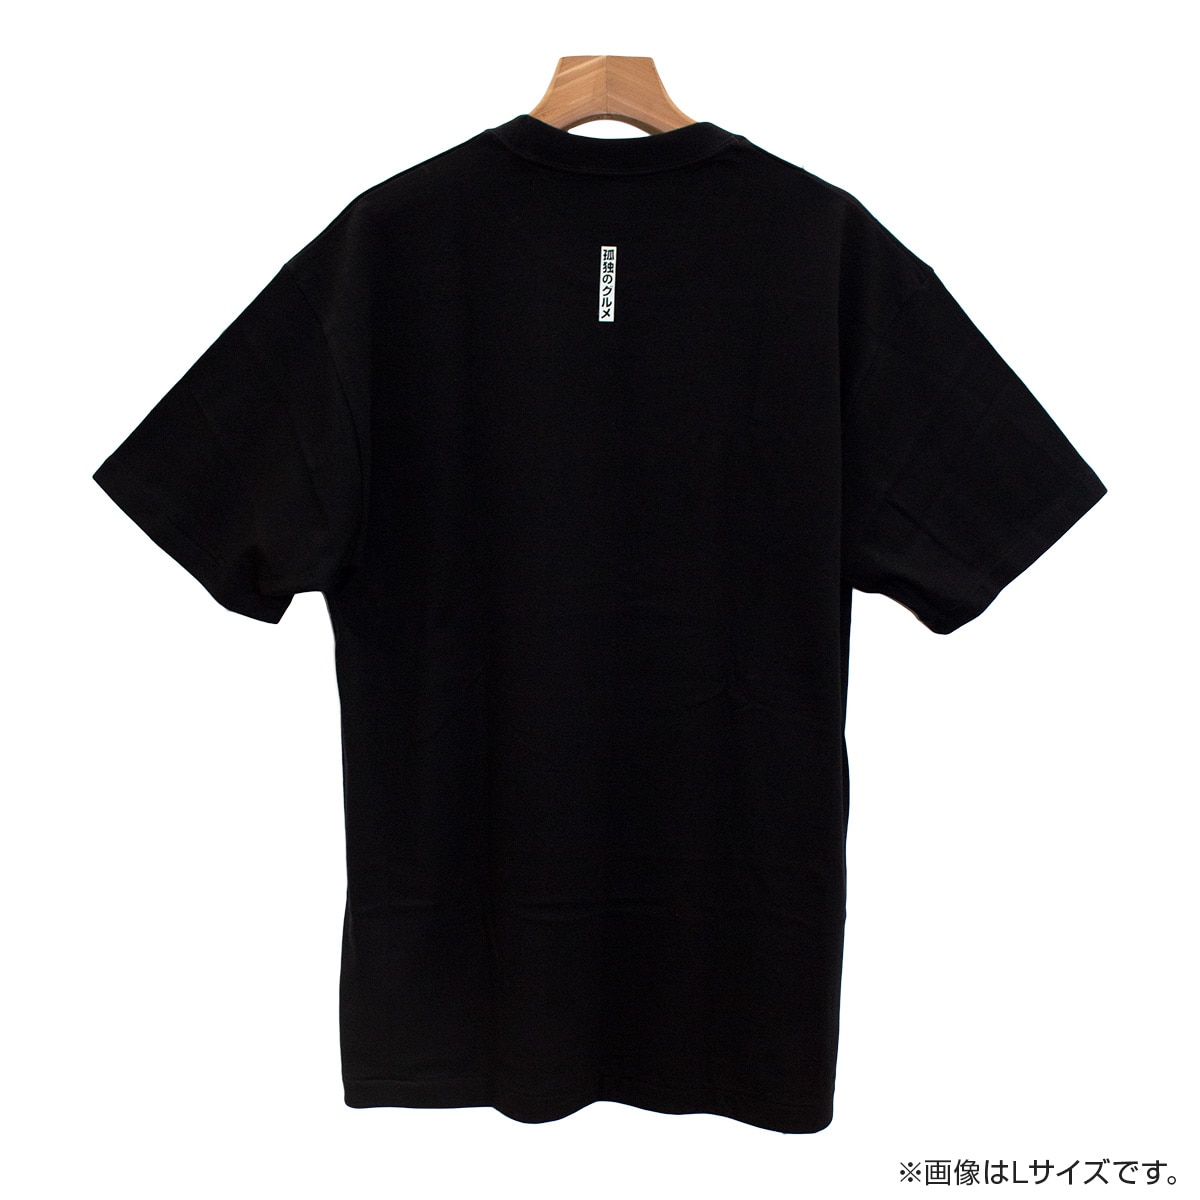 Tシャツ/カットソー(半袖/袖なし)新品☆Paul Smith RED EAR フラワー刺繍 Tシャツ☆黒☆Mサイズ